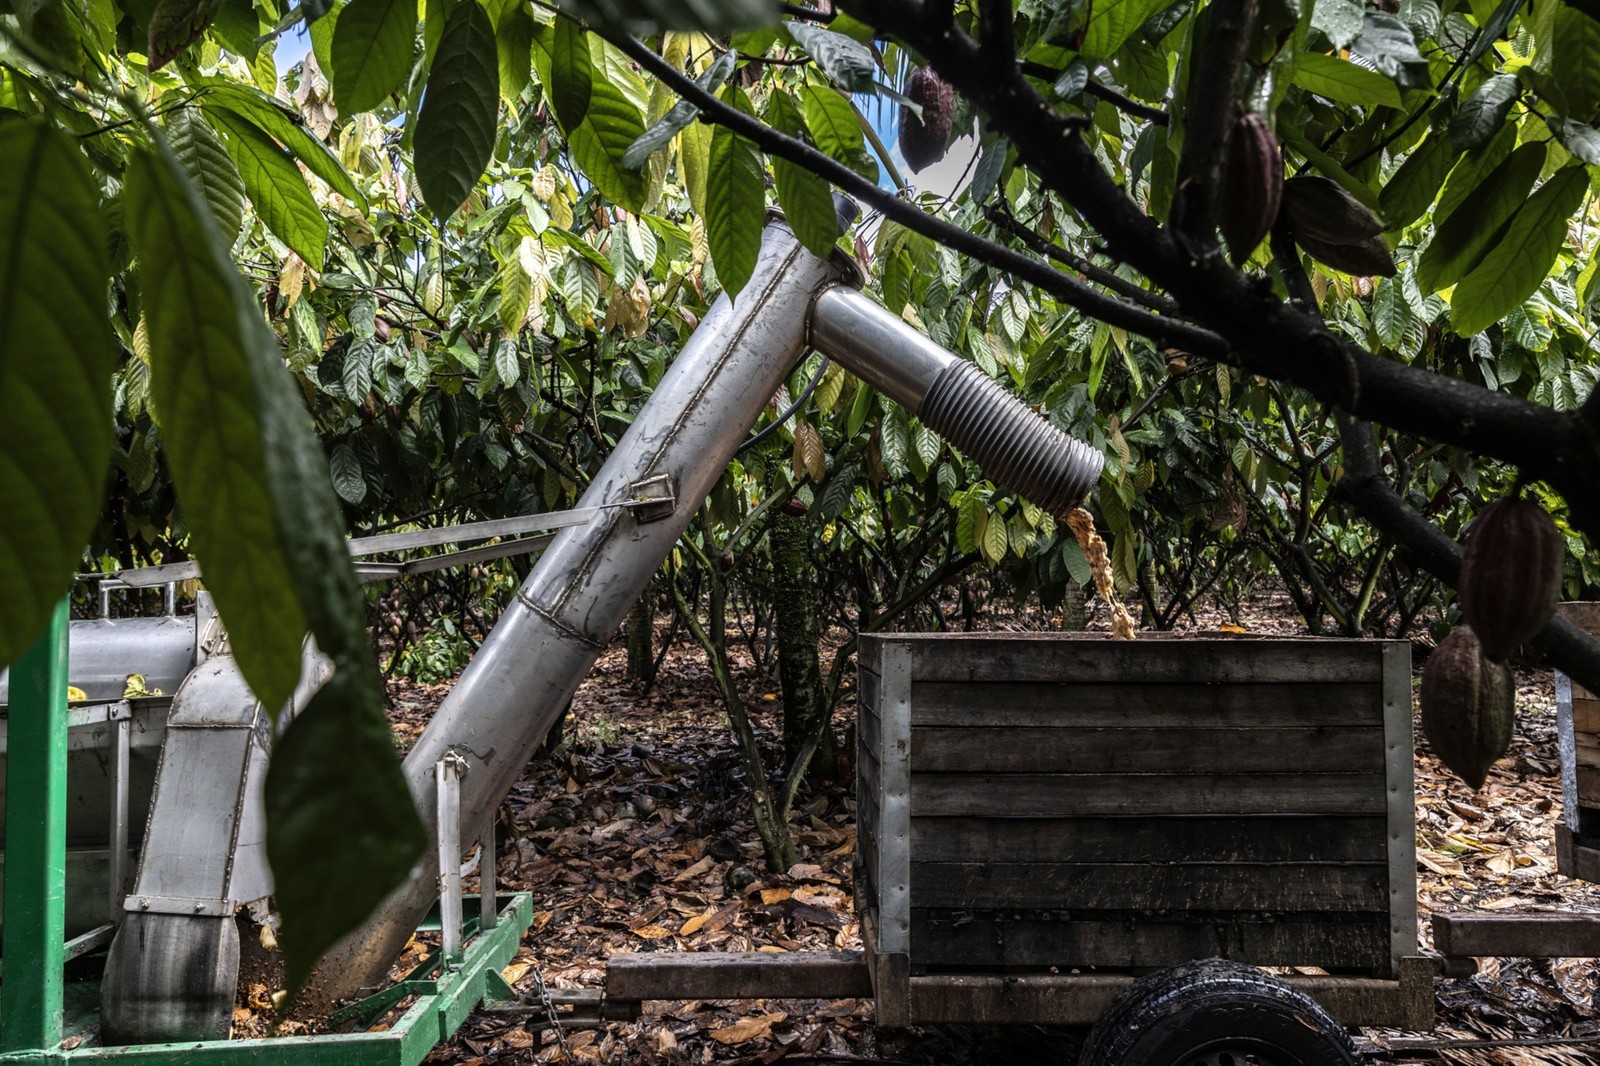 Máquina usada para descascar cacau em uma fazenda em Eunápolis, no estado da Bahia — Foto: Dado Galdieri/Bloomberg